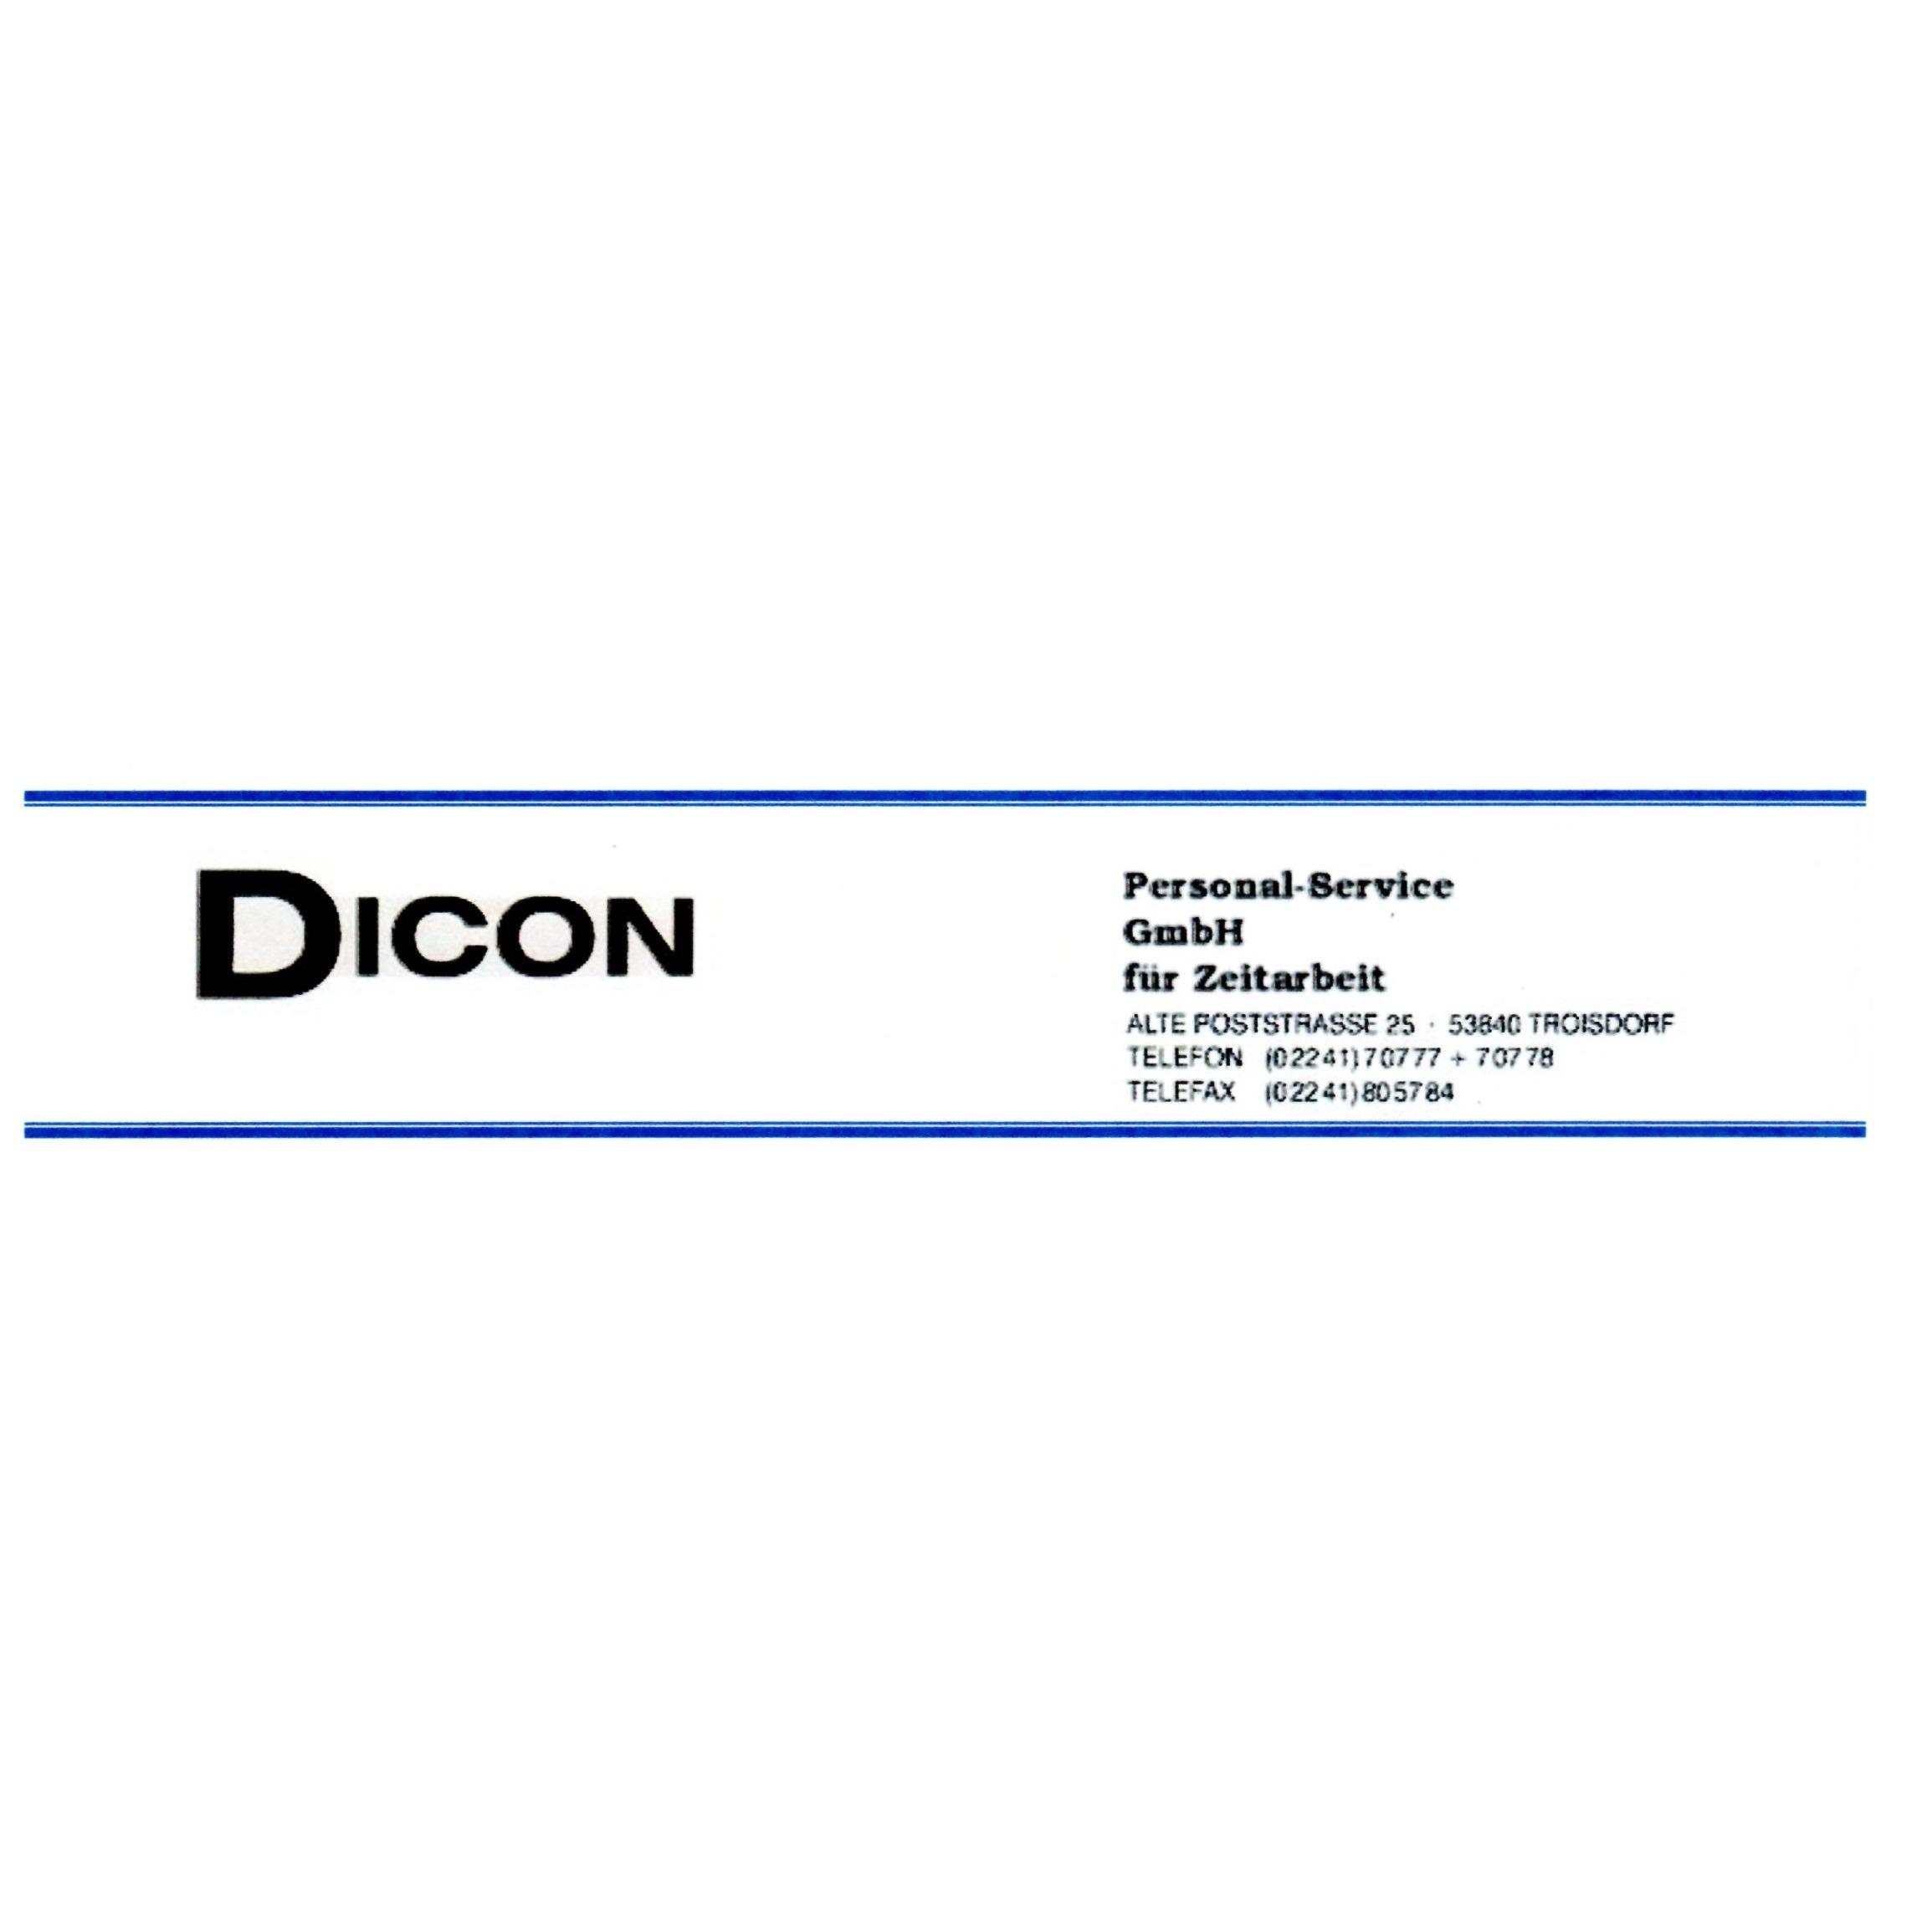 Dicon Personalservice GmbH für Zeitarbeit in Troisdorf - Logo